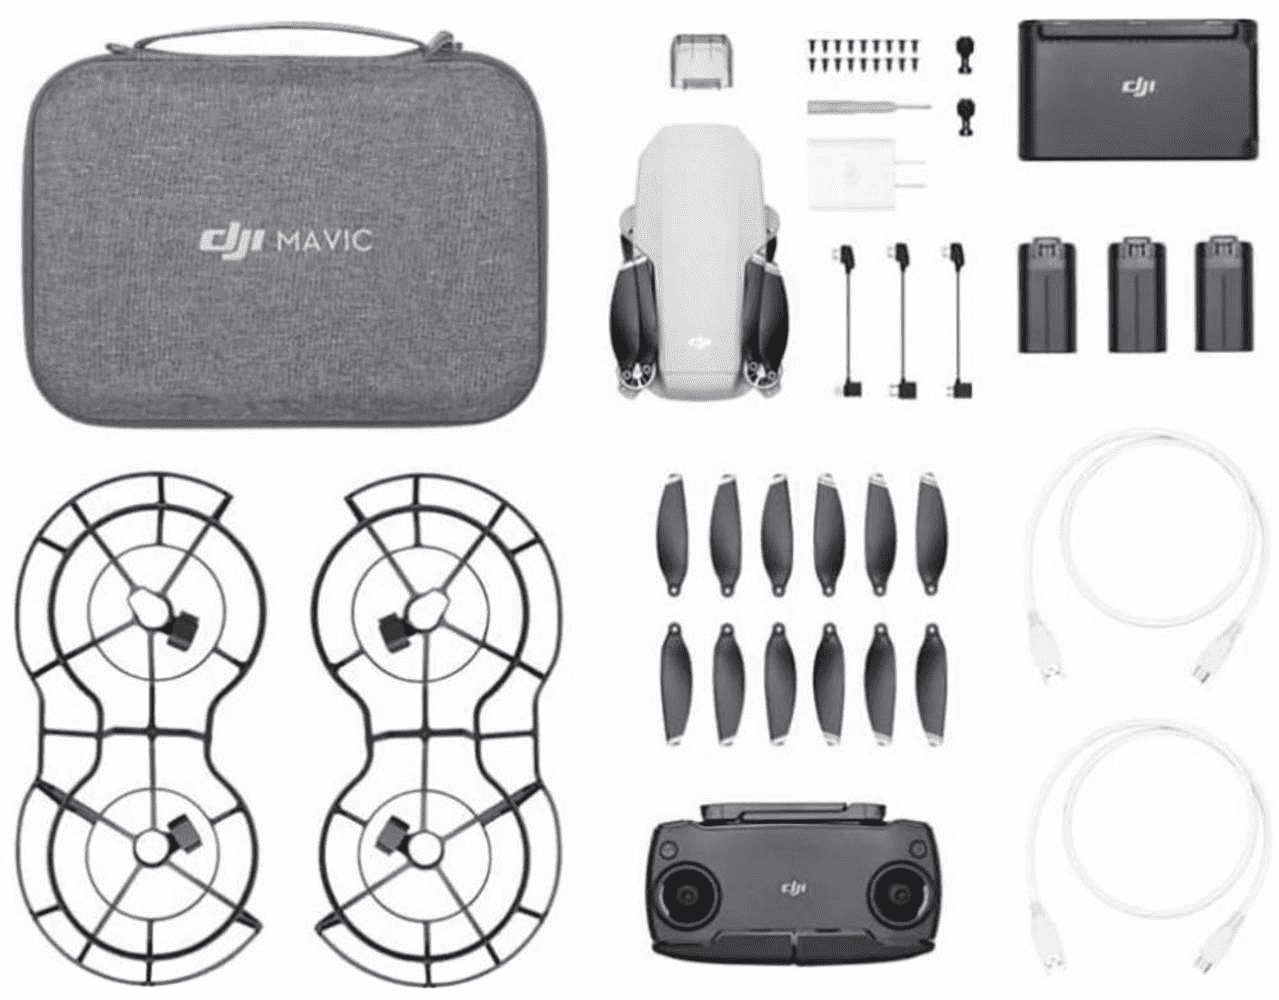 dji »DJI Mavic Mini Fly More Combo – Drohne und Zubehör Kit, leicht und  tragbar, Flugzeit: 30 Min, Übertragungsentfernung: 4 km  HD-Videoübertragung, 3-Achsen-Gimbal, 12 MP, HD-Video 2,7 K -  Kundenretoure« Drohne online kaufen | OTTO